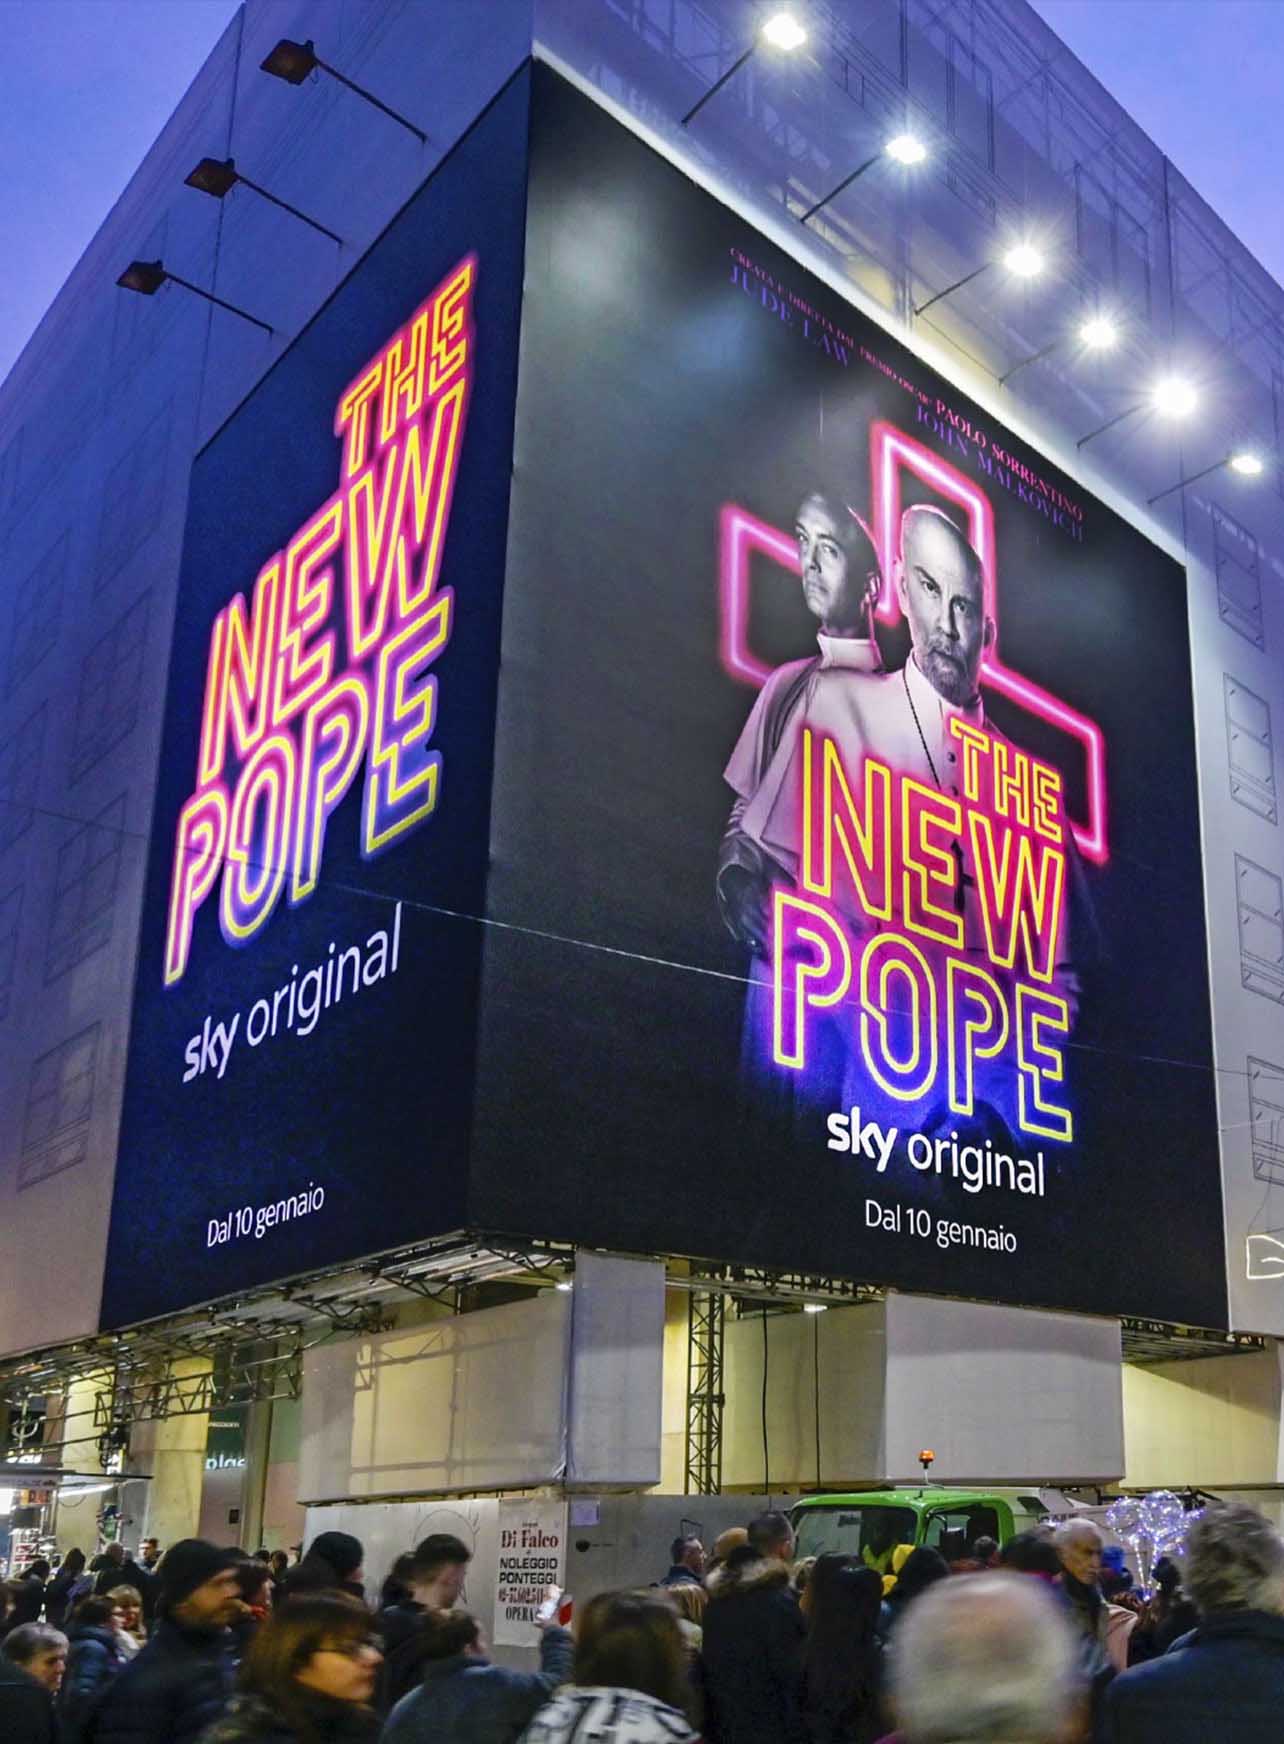 SKY Original - The New Pope - Billboard